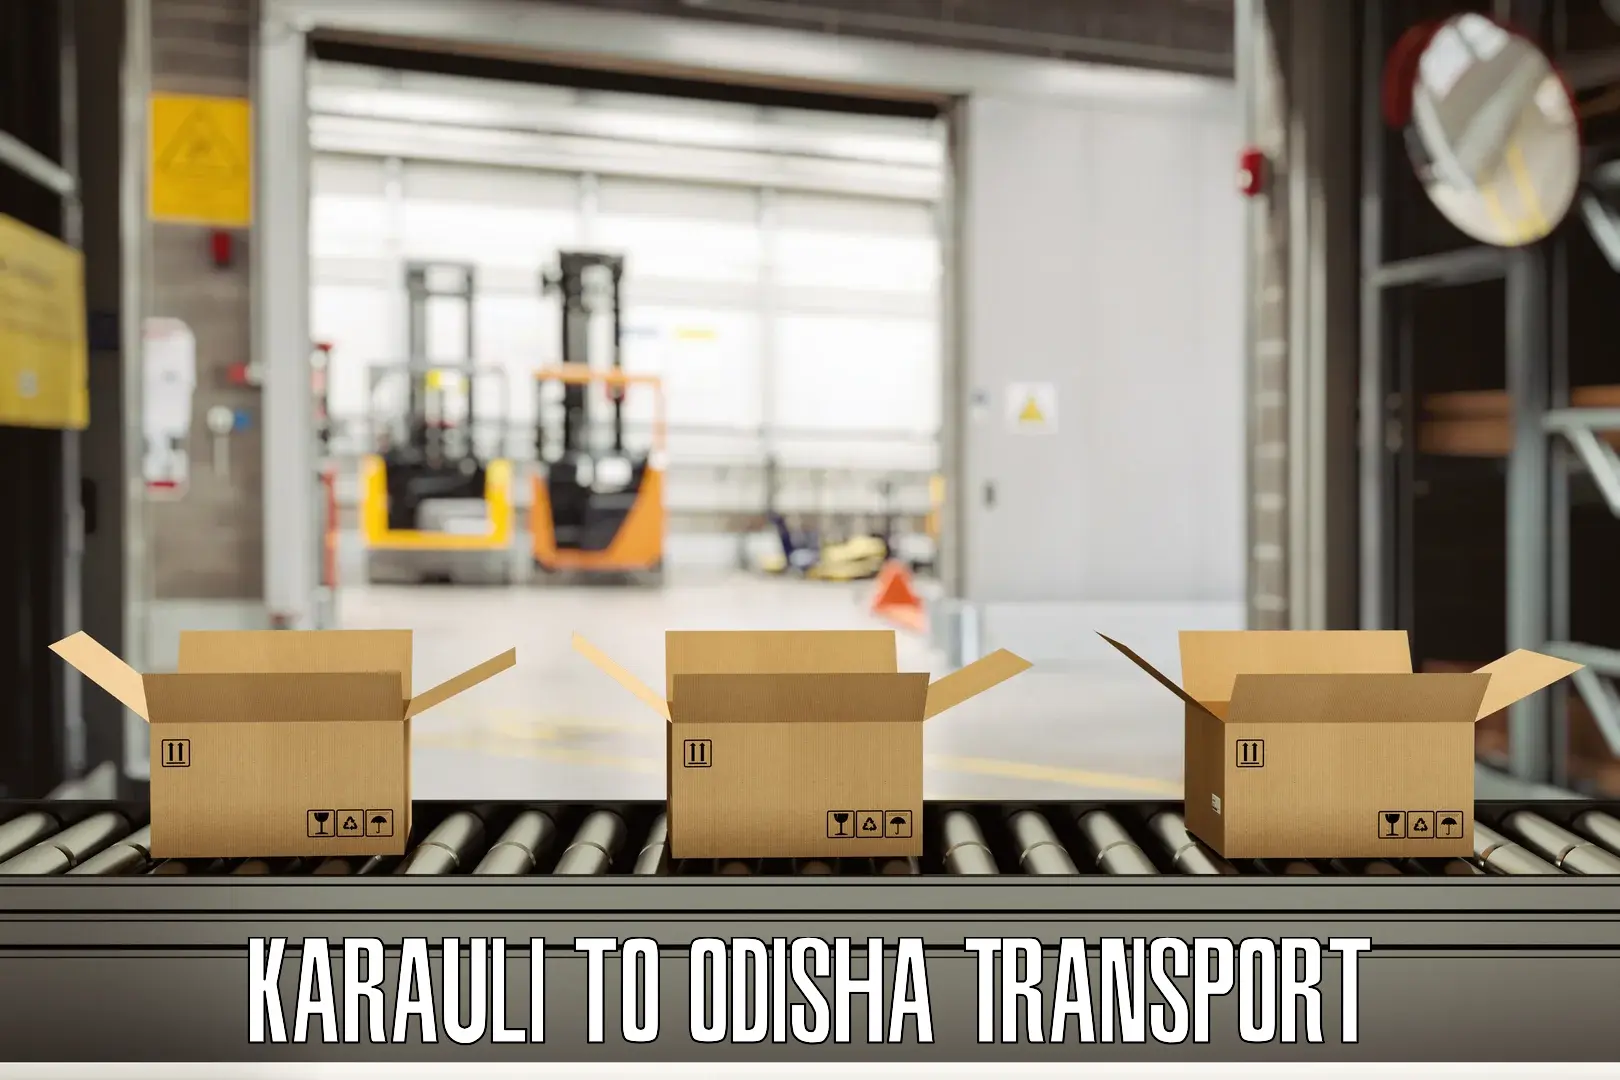 India truck logistics services Karauli to Talcher